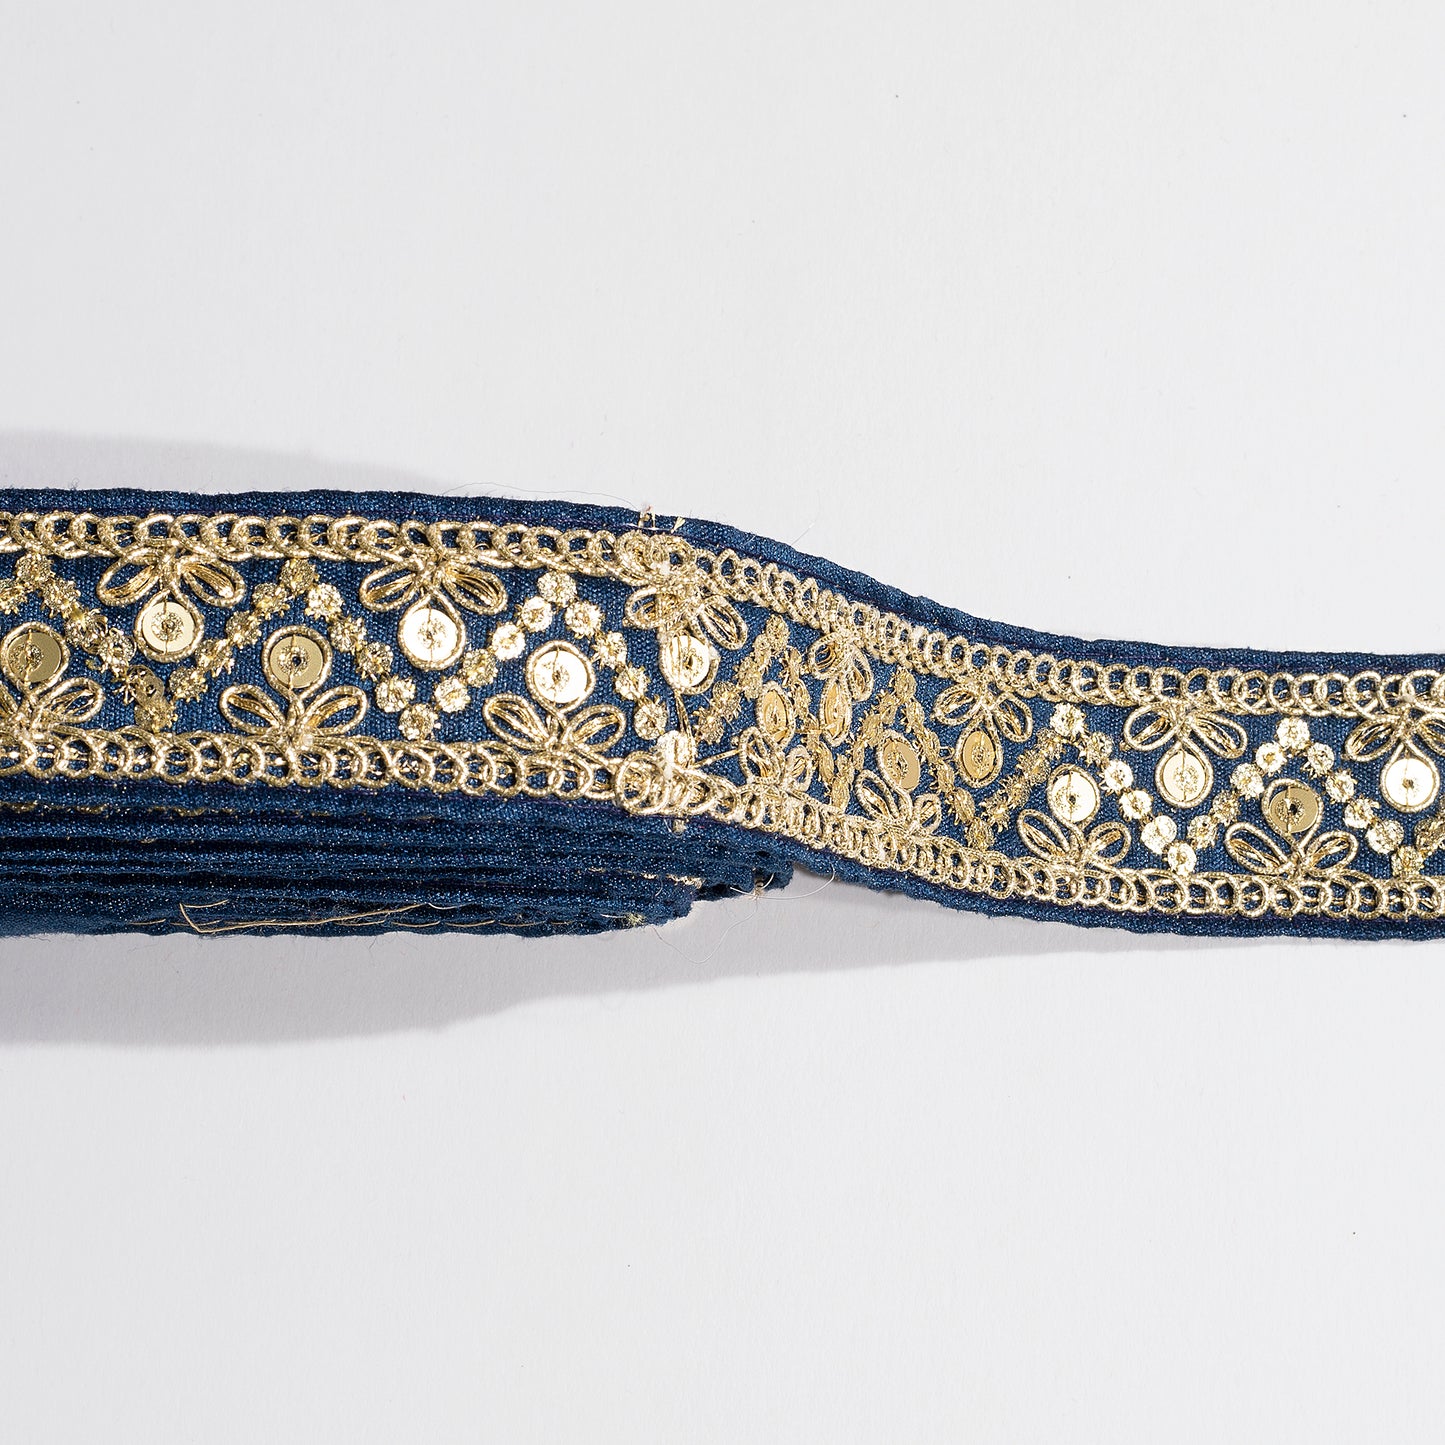 Zardosi Work Weaving Magic on Blue Fancy Lace (9 Mtr)